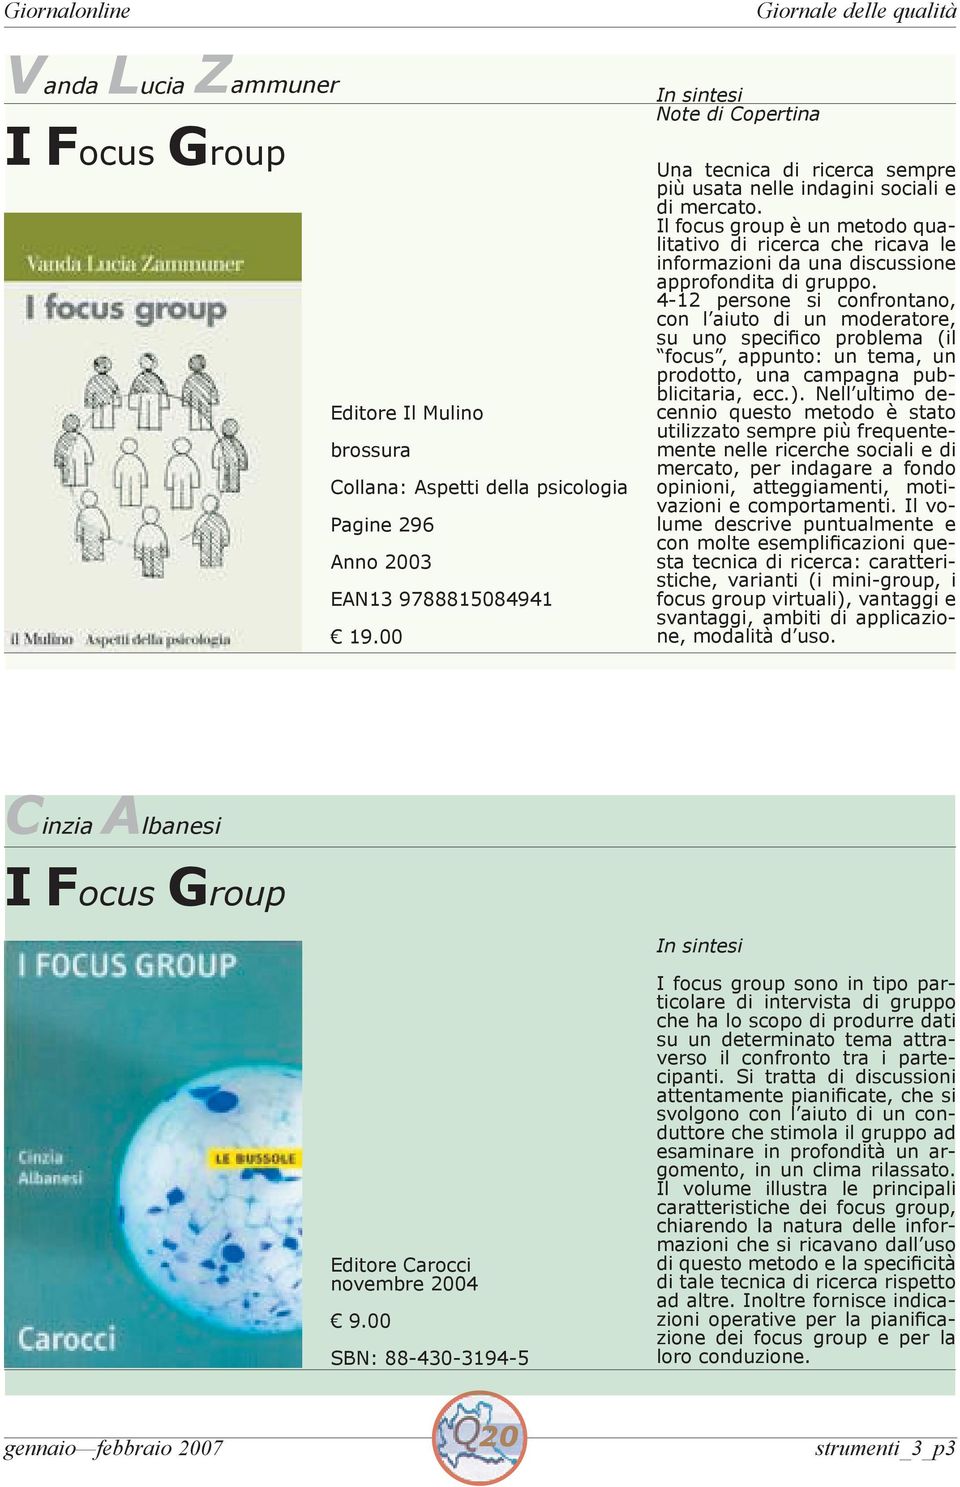 Il focus group è un metodo qualitativo di ricerca che ricava le informazioni da una discussione approfondita di gruppo.